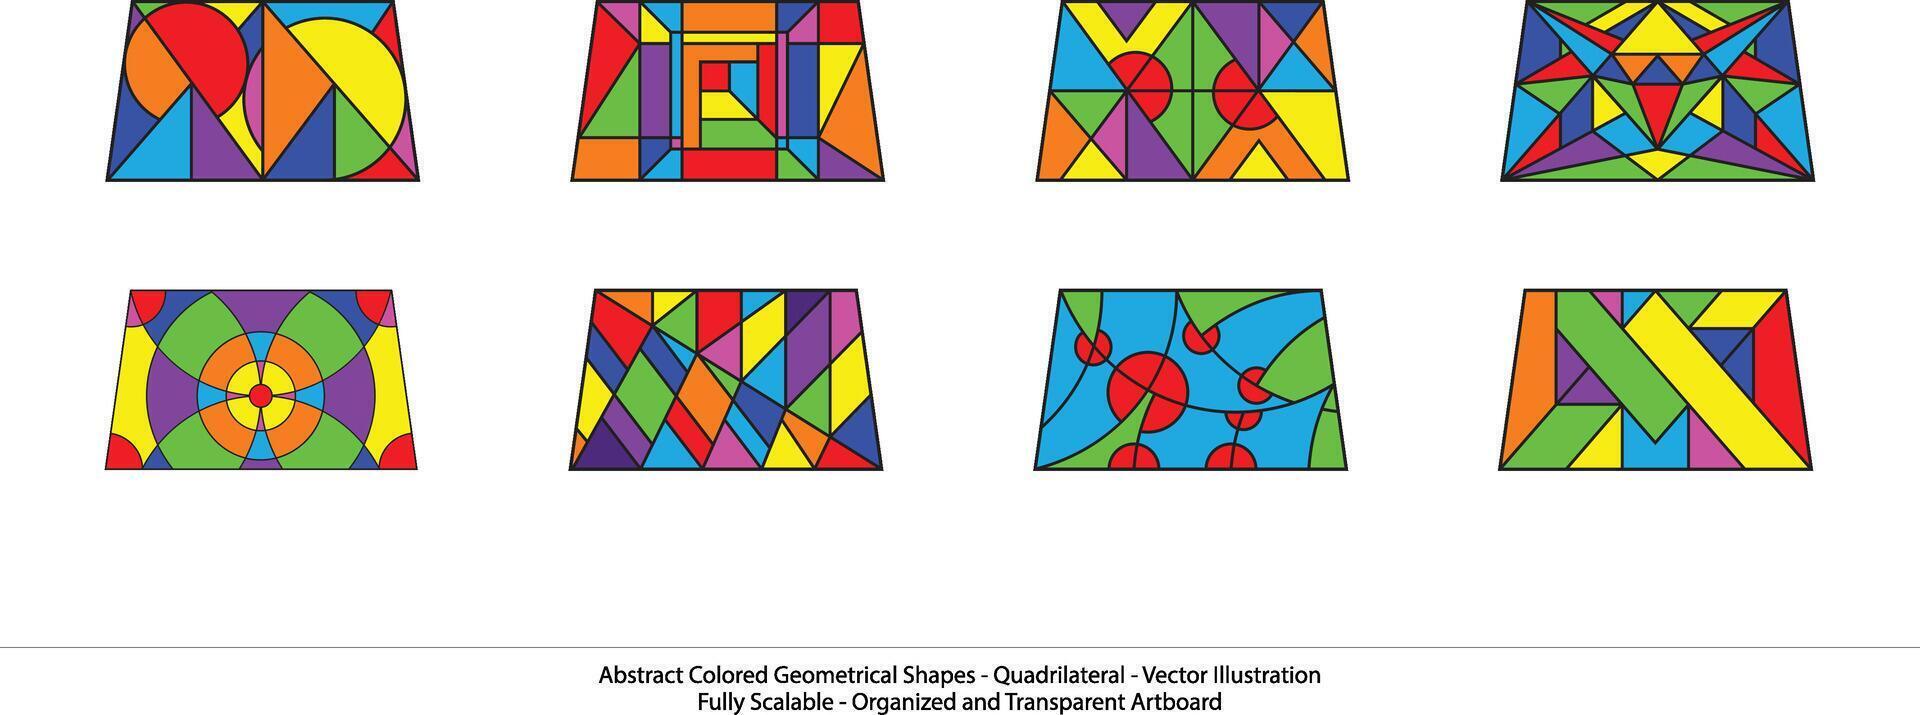 conjunto do quadrilátero formas. arco Iris cores. abstrato colori geométrico formas - quadrilátero- vetor ilustração. moderno parede arte.lúdica geométrico formas criando uma sentido do movimento.